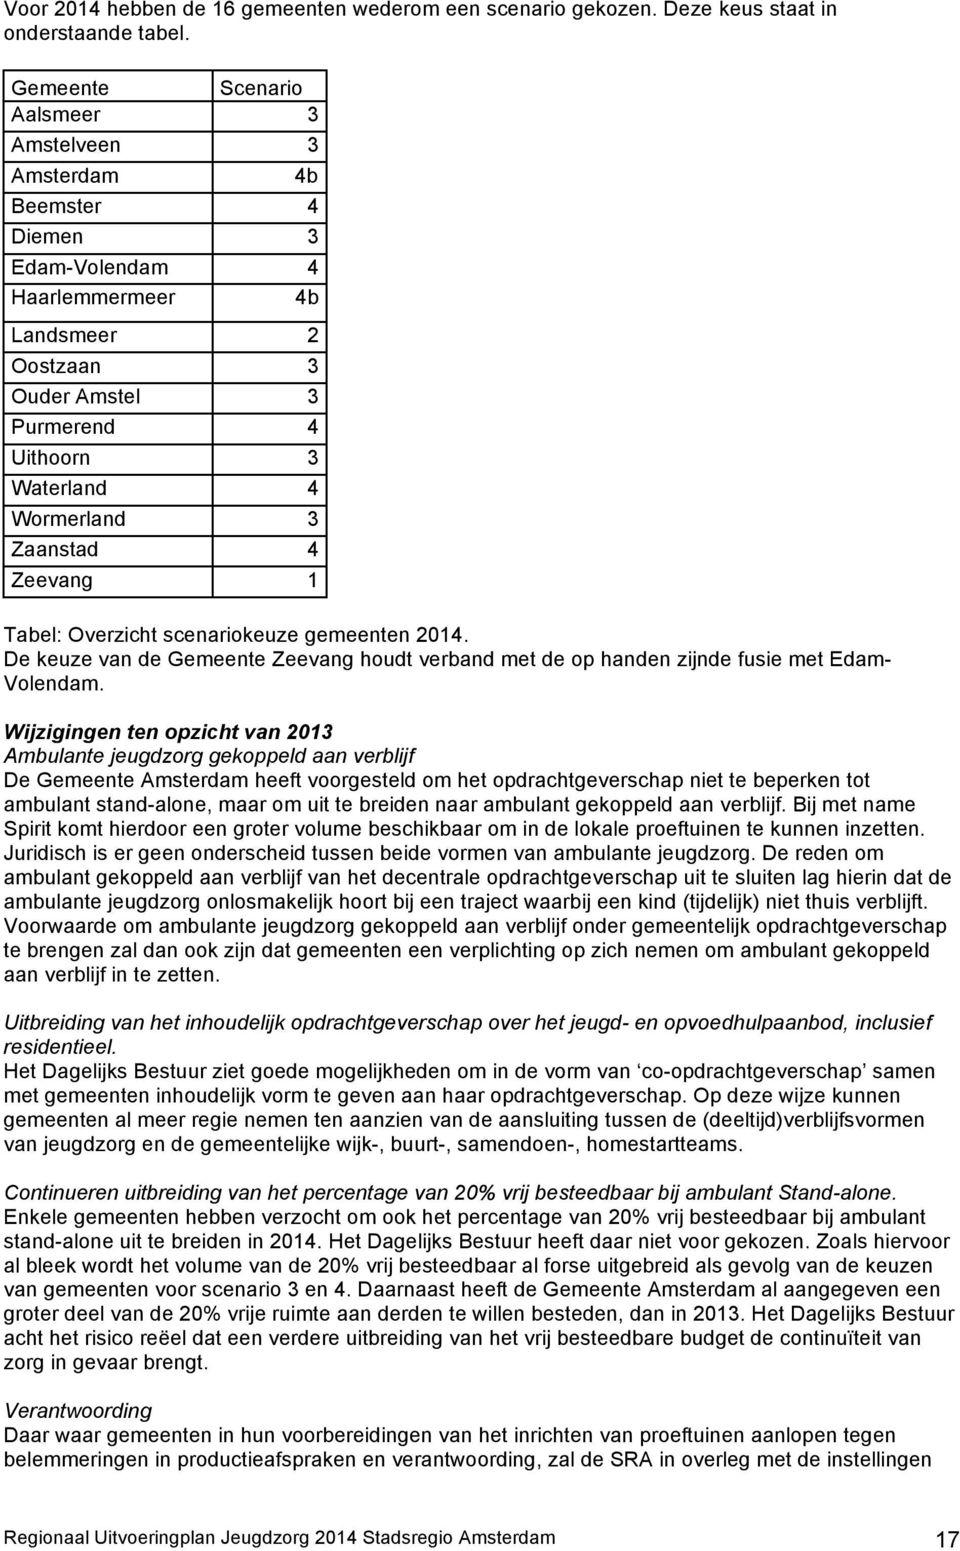 Zaanstad 4 Zeevang 1 Tabel: Overzicht scenariokeuze gemeenten 2014. De keuze van de Gemeente Zeevang houdt verband met de op handen zijnde fusie met Edam- Volendam.